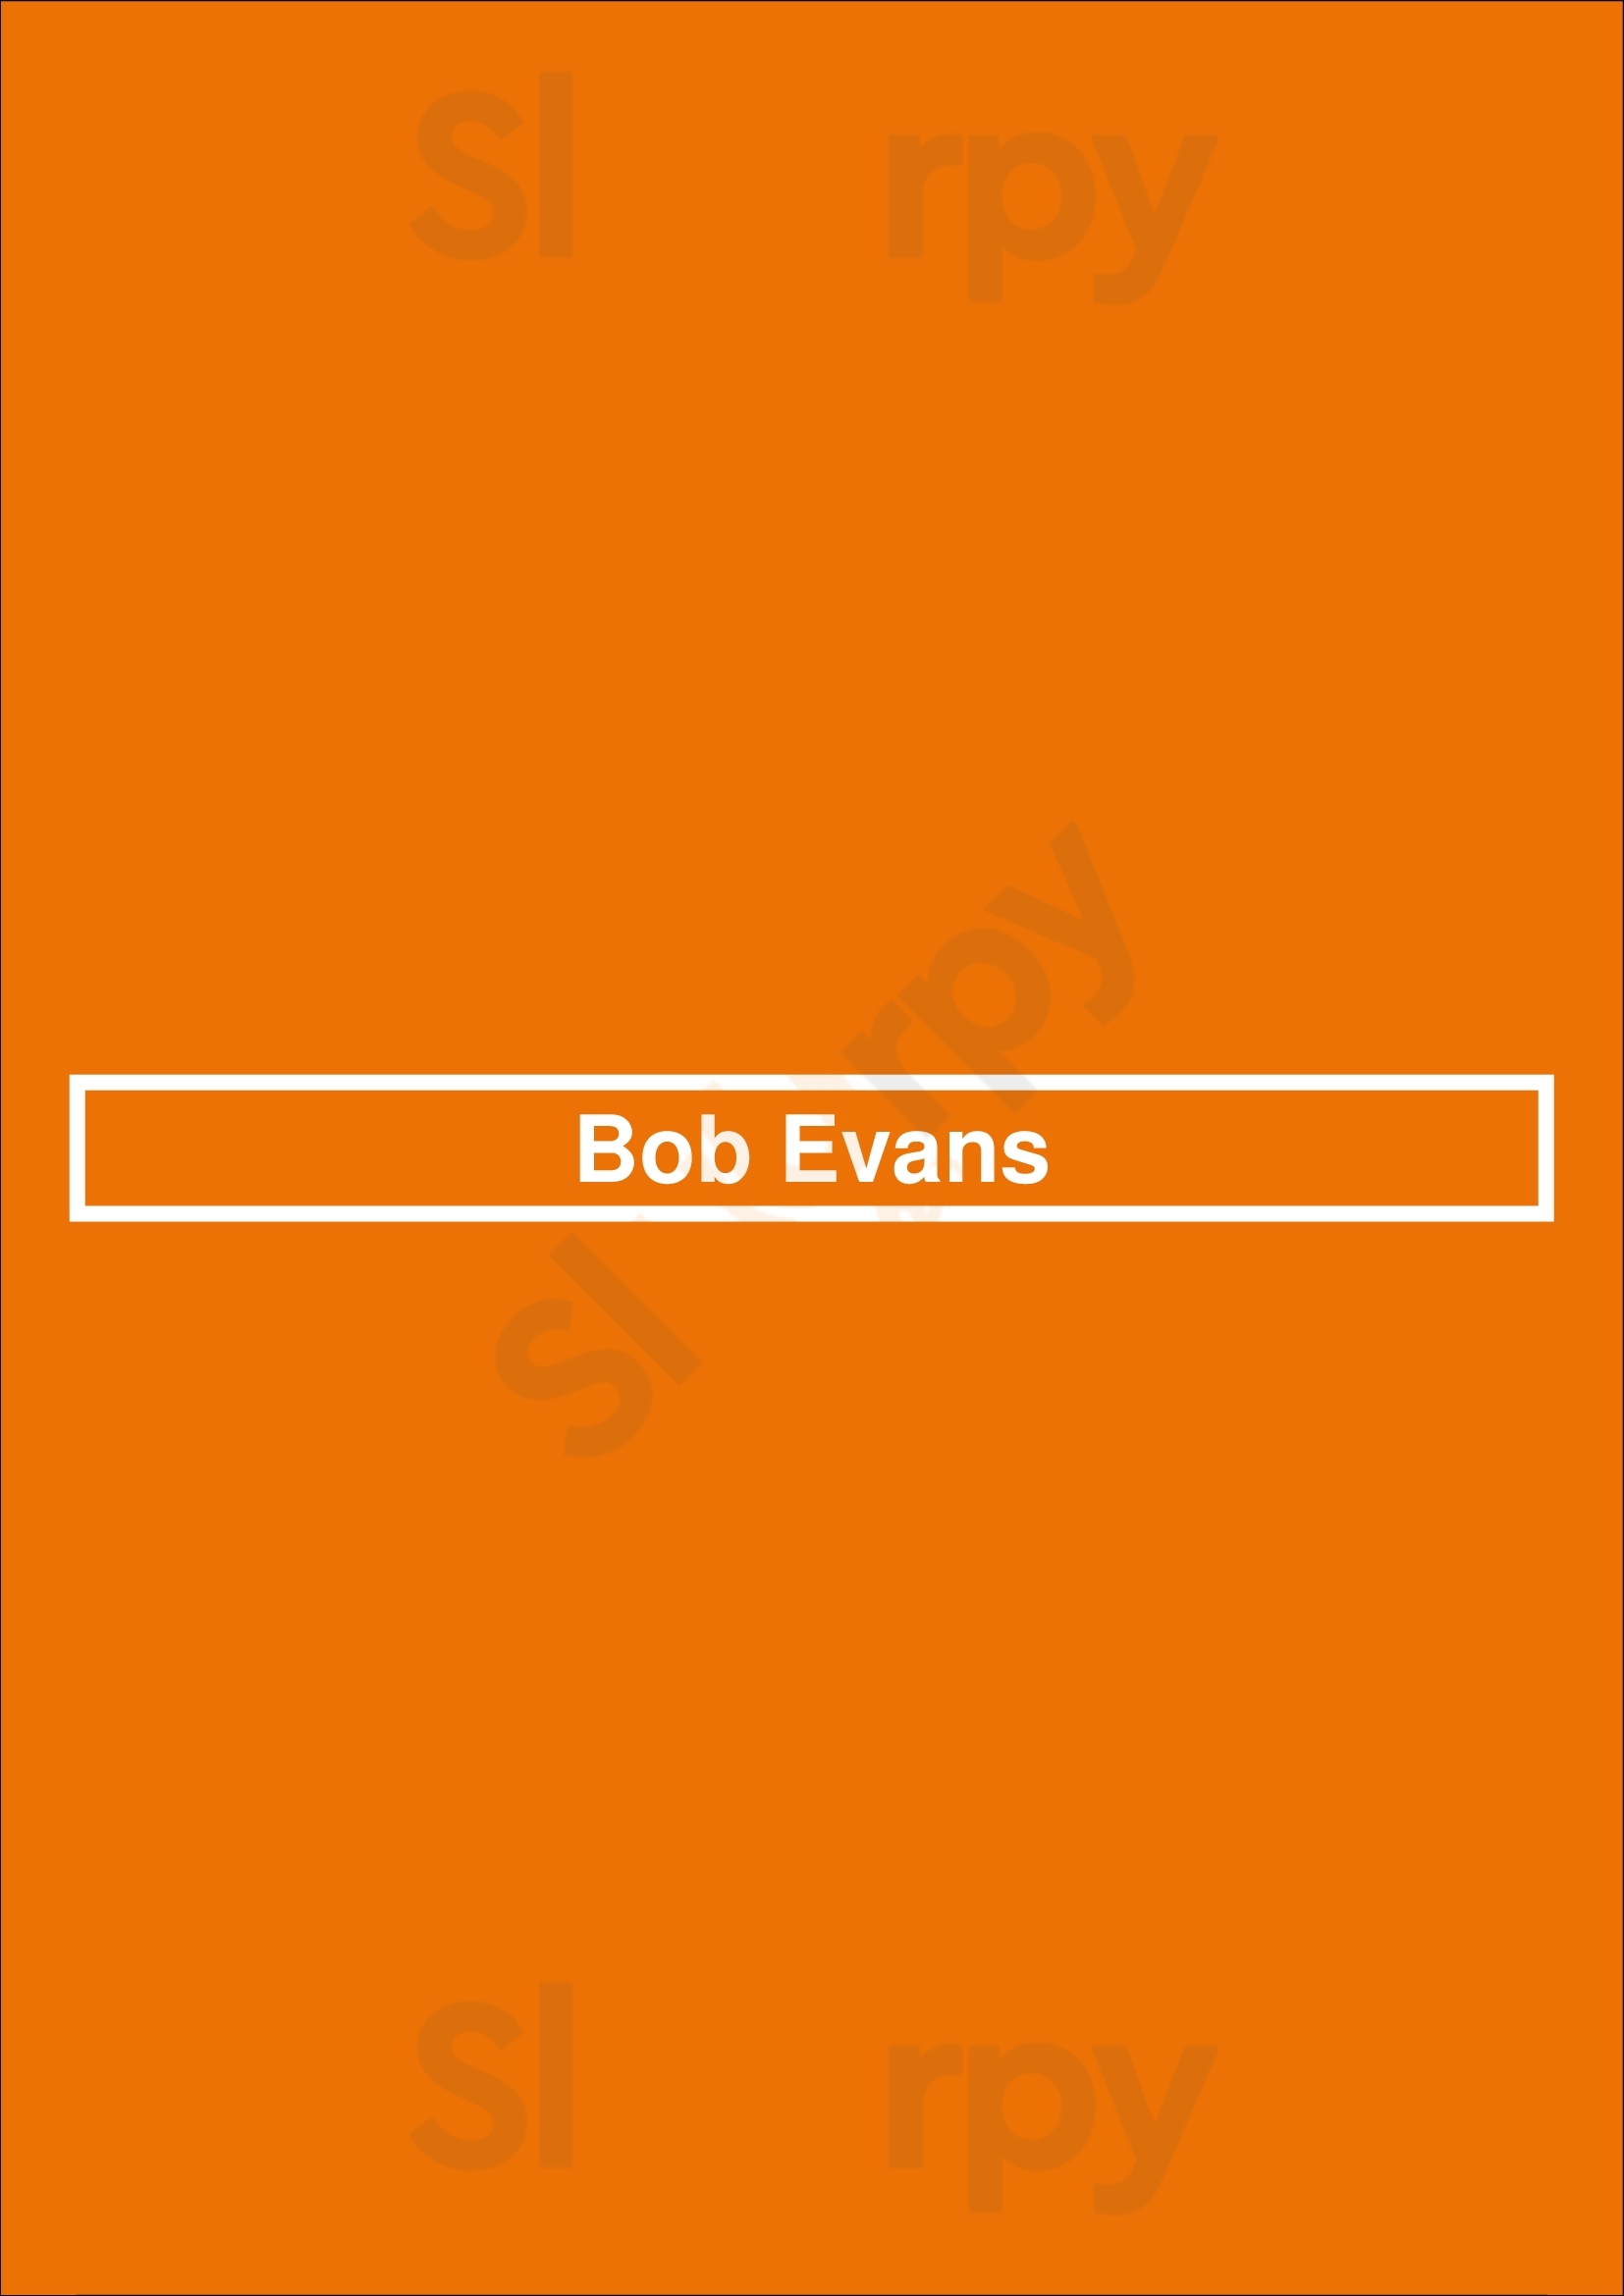 Bob Evans Cincinnati Menu - 1